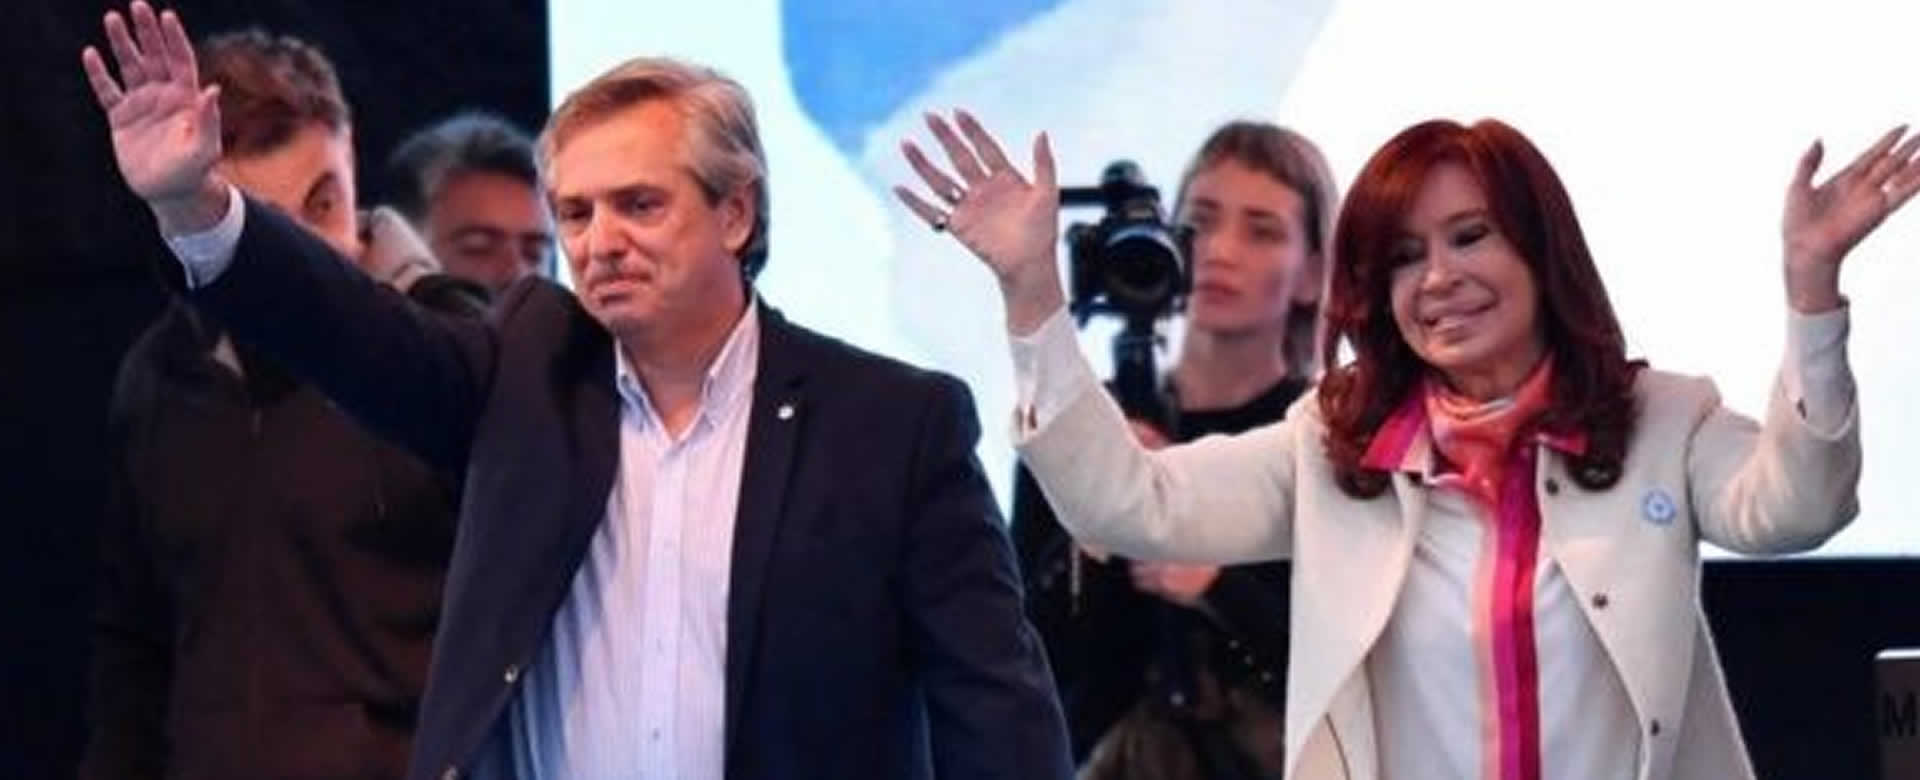 Victoria abrumadora de Fernández - Fernández en las primarias argentinas